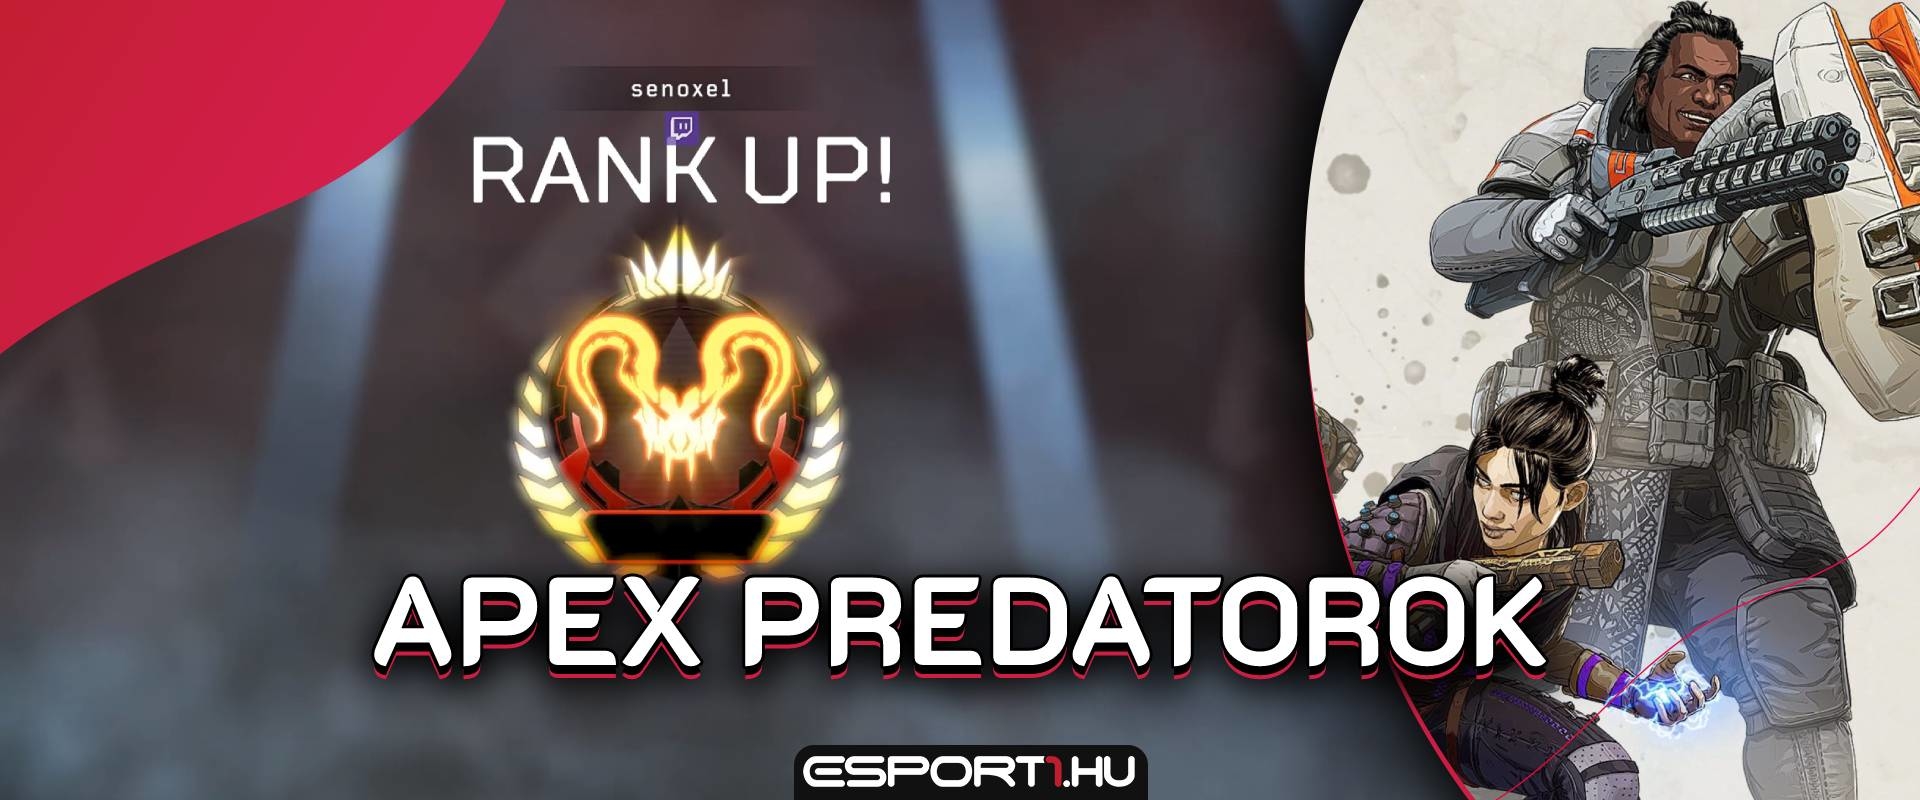 Megvan a világ első Apex Predator csapata